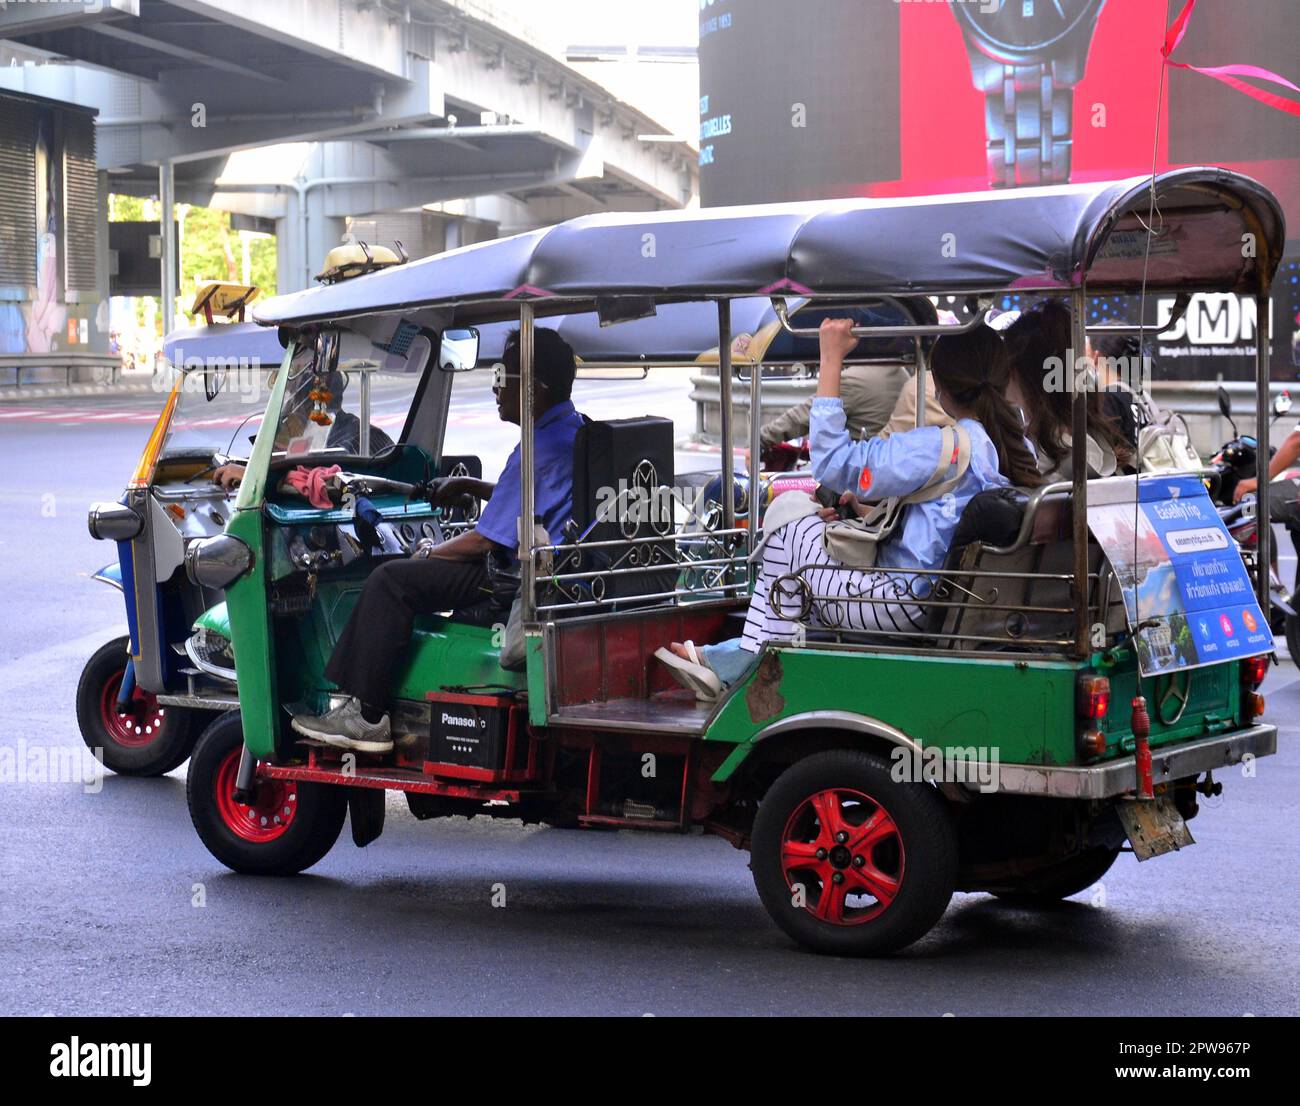 Travailleurs, Bangkok, Thaïlande, Asie. Les conducteurs de tuk tuk transportent des passagers dans le district de Silom. Sortie Silom Road avec Rama IV Road. Banque D'Images